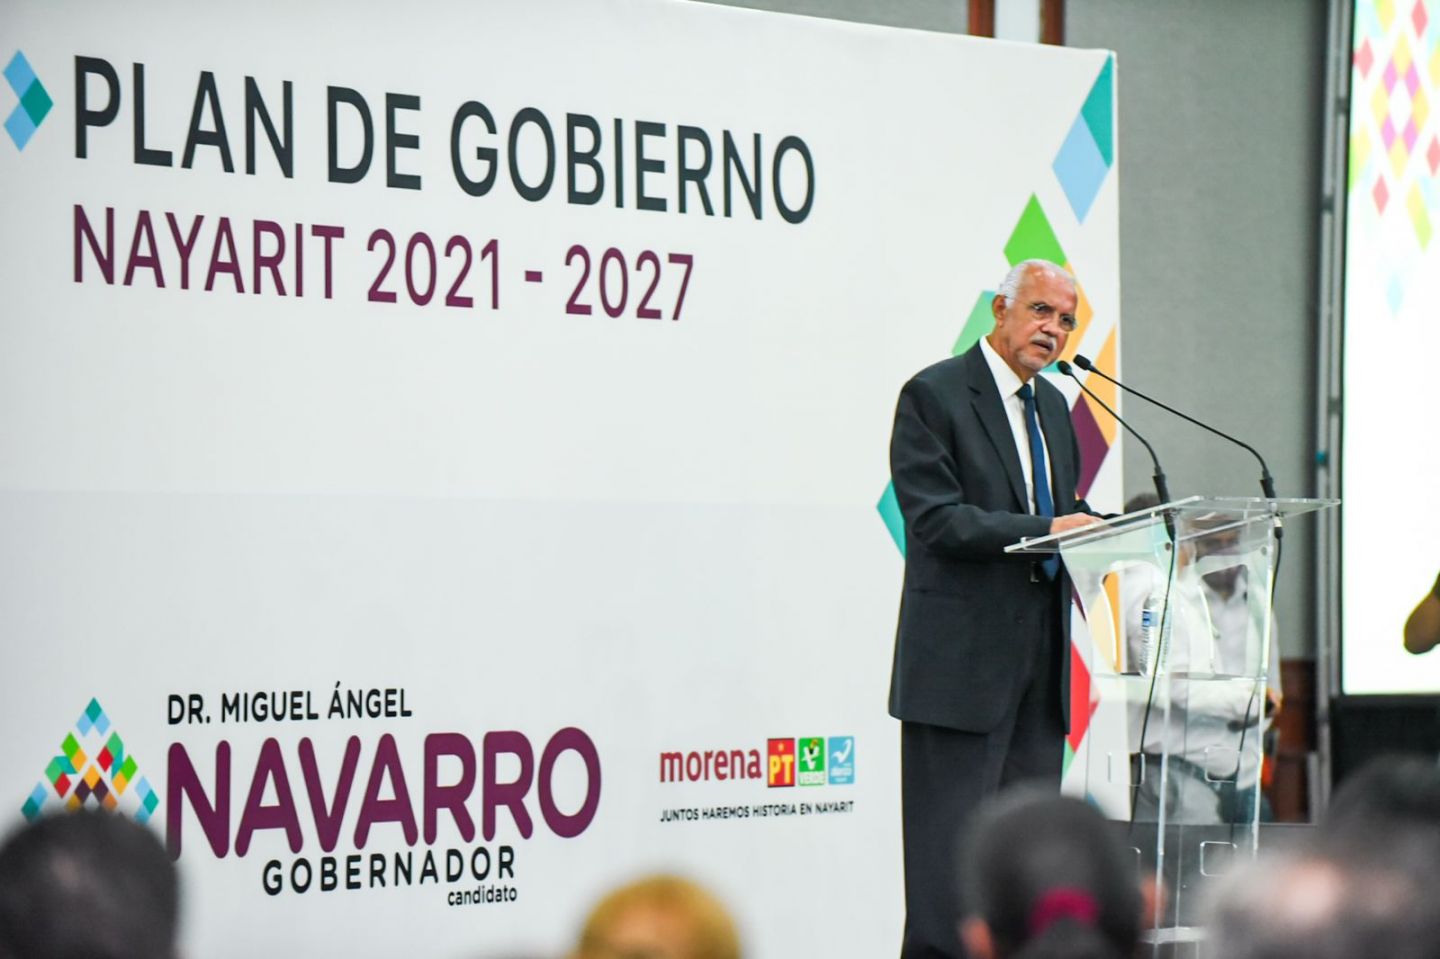 Presenta Navarro Quintero Plan de Gobierno Nayarit 2021-2027